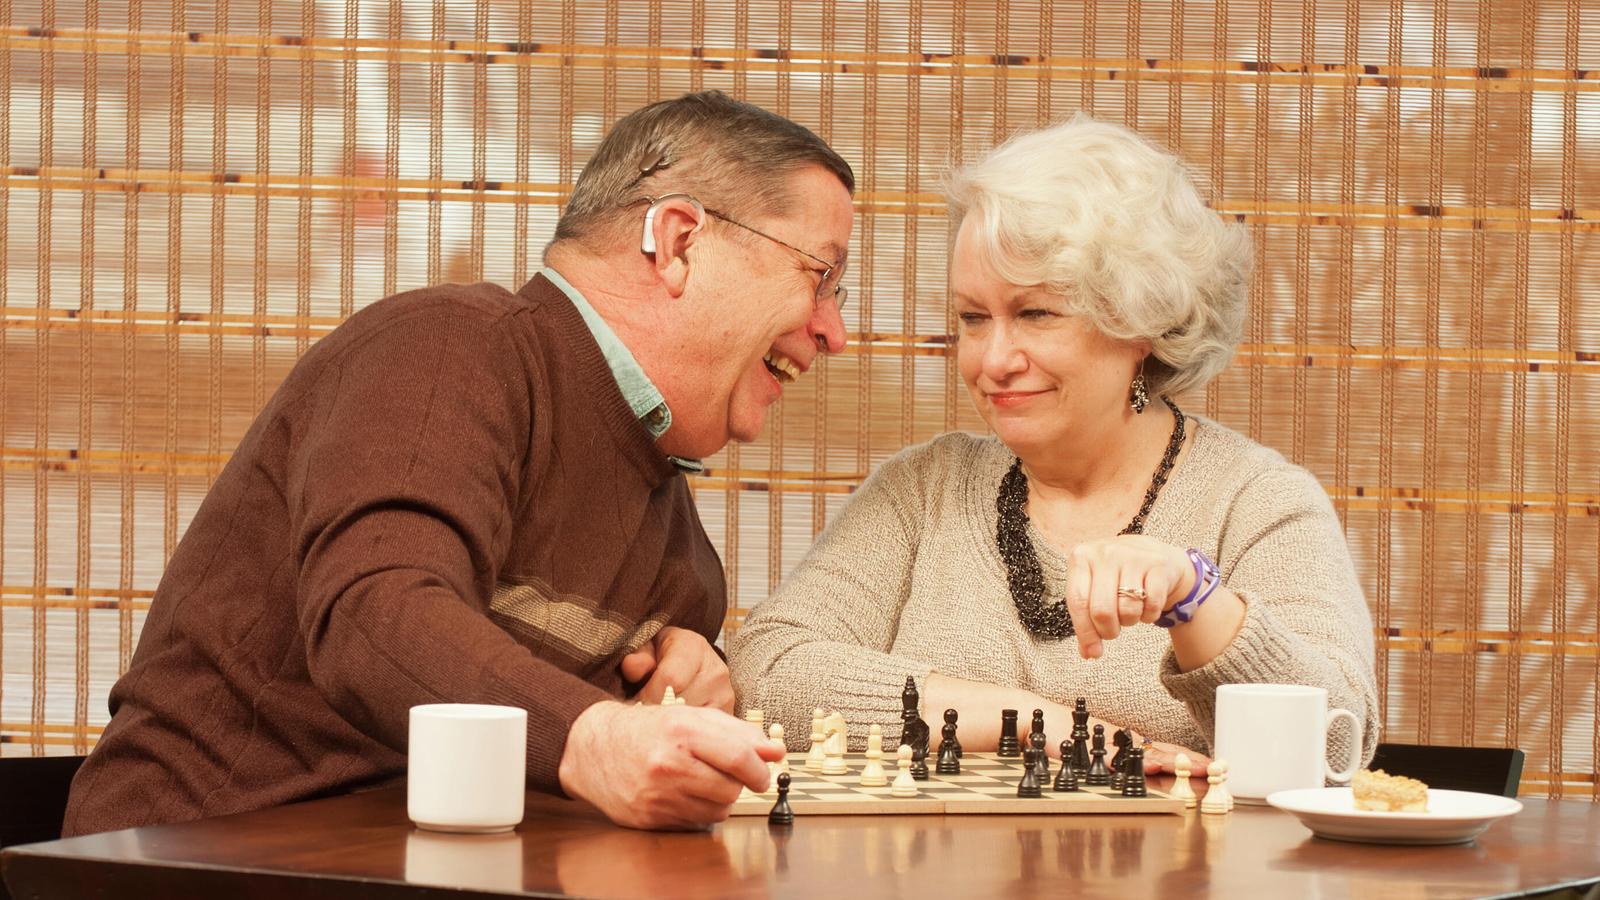 Implantatträger Bill und Ehefrau Pam amüsieren sich beim Schachspiel